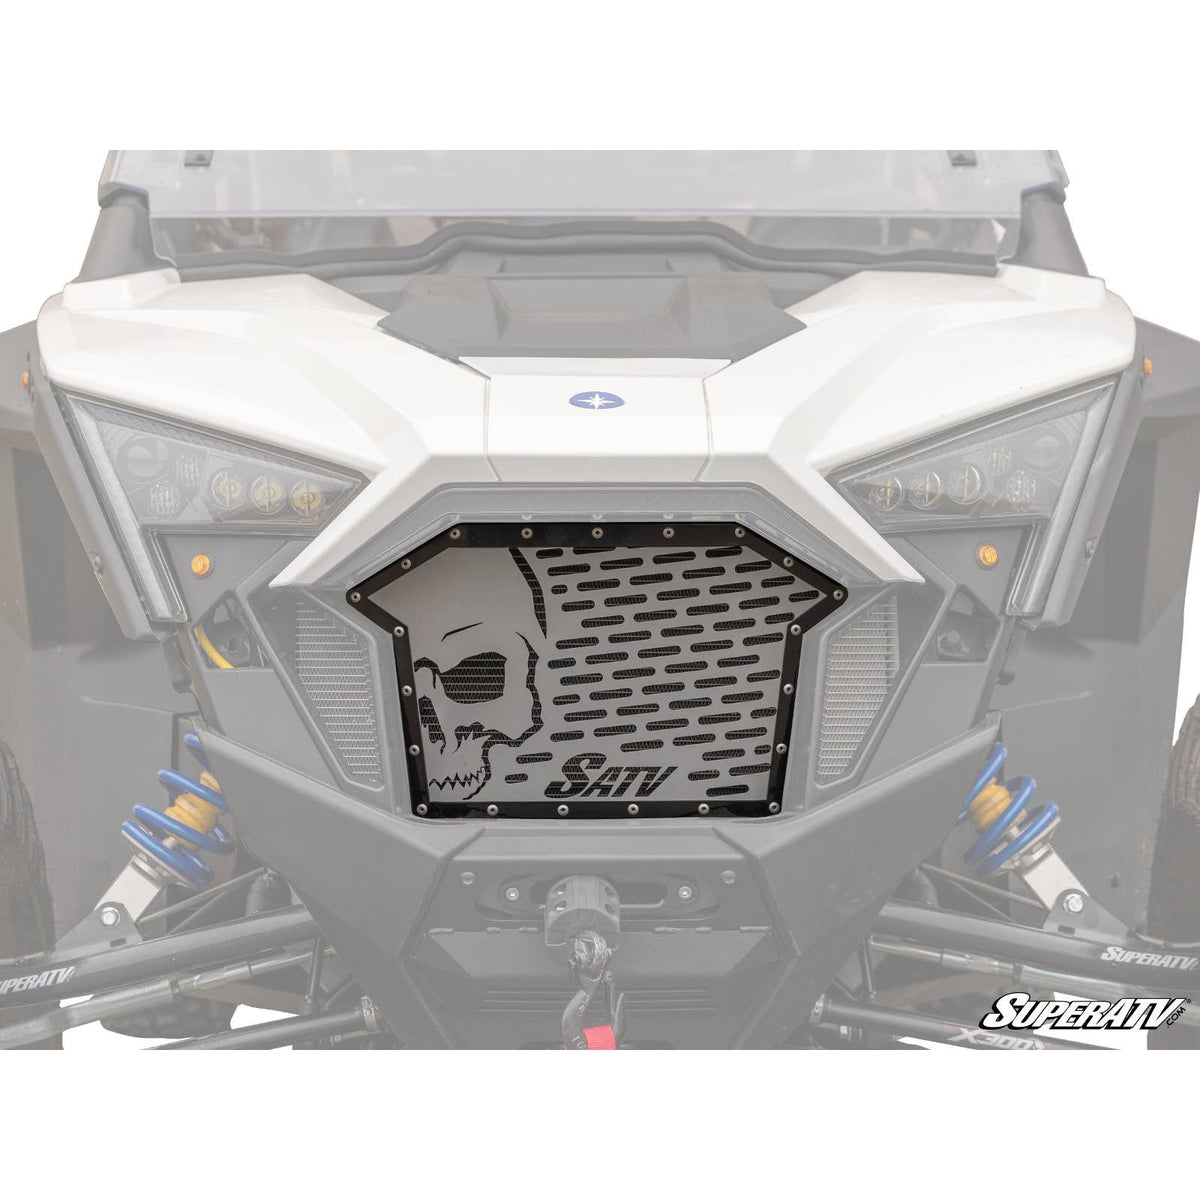 Polaris RZR Pro XP / Turbo R Skull Style Front Grille Insert